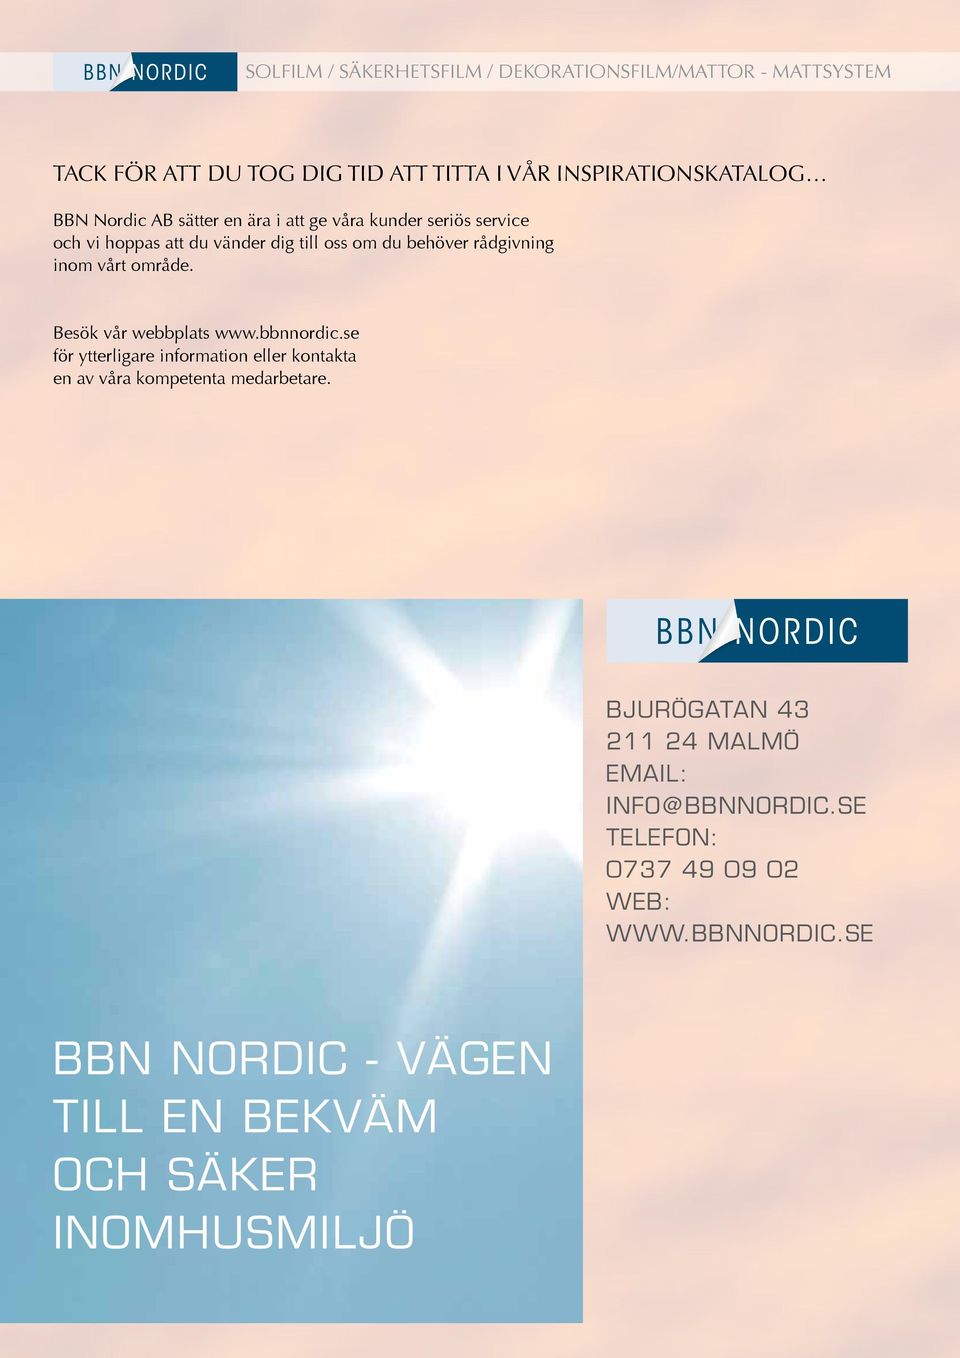 bbnnordic.se för ytterligare information eller kontakta en av våra kompetenta medarbetare.